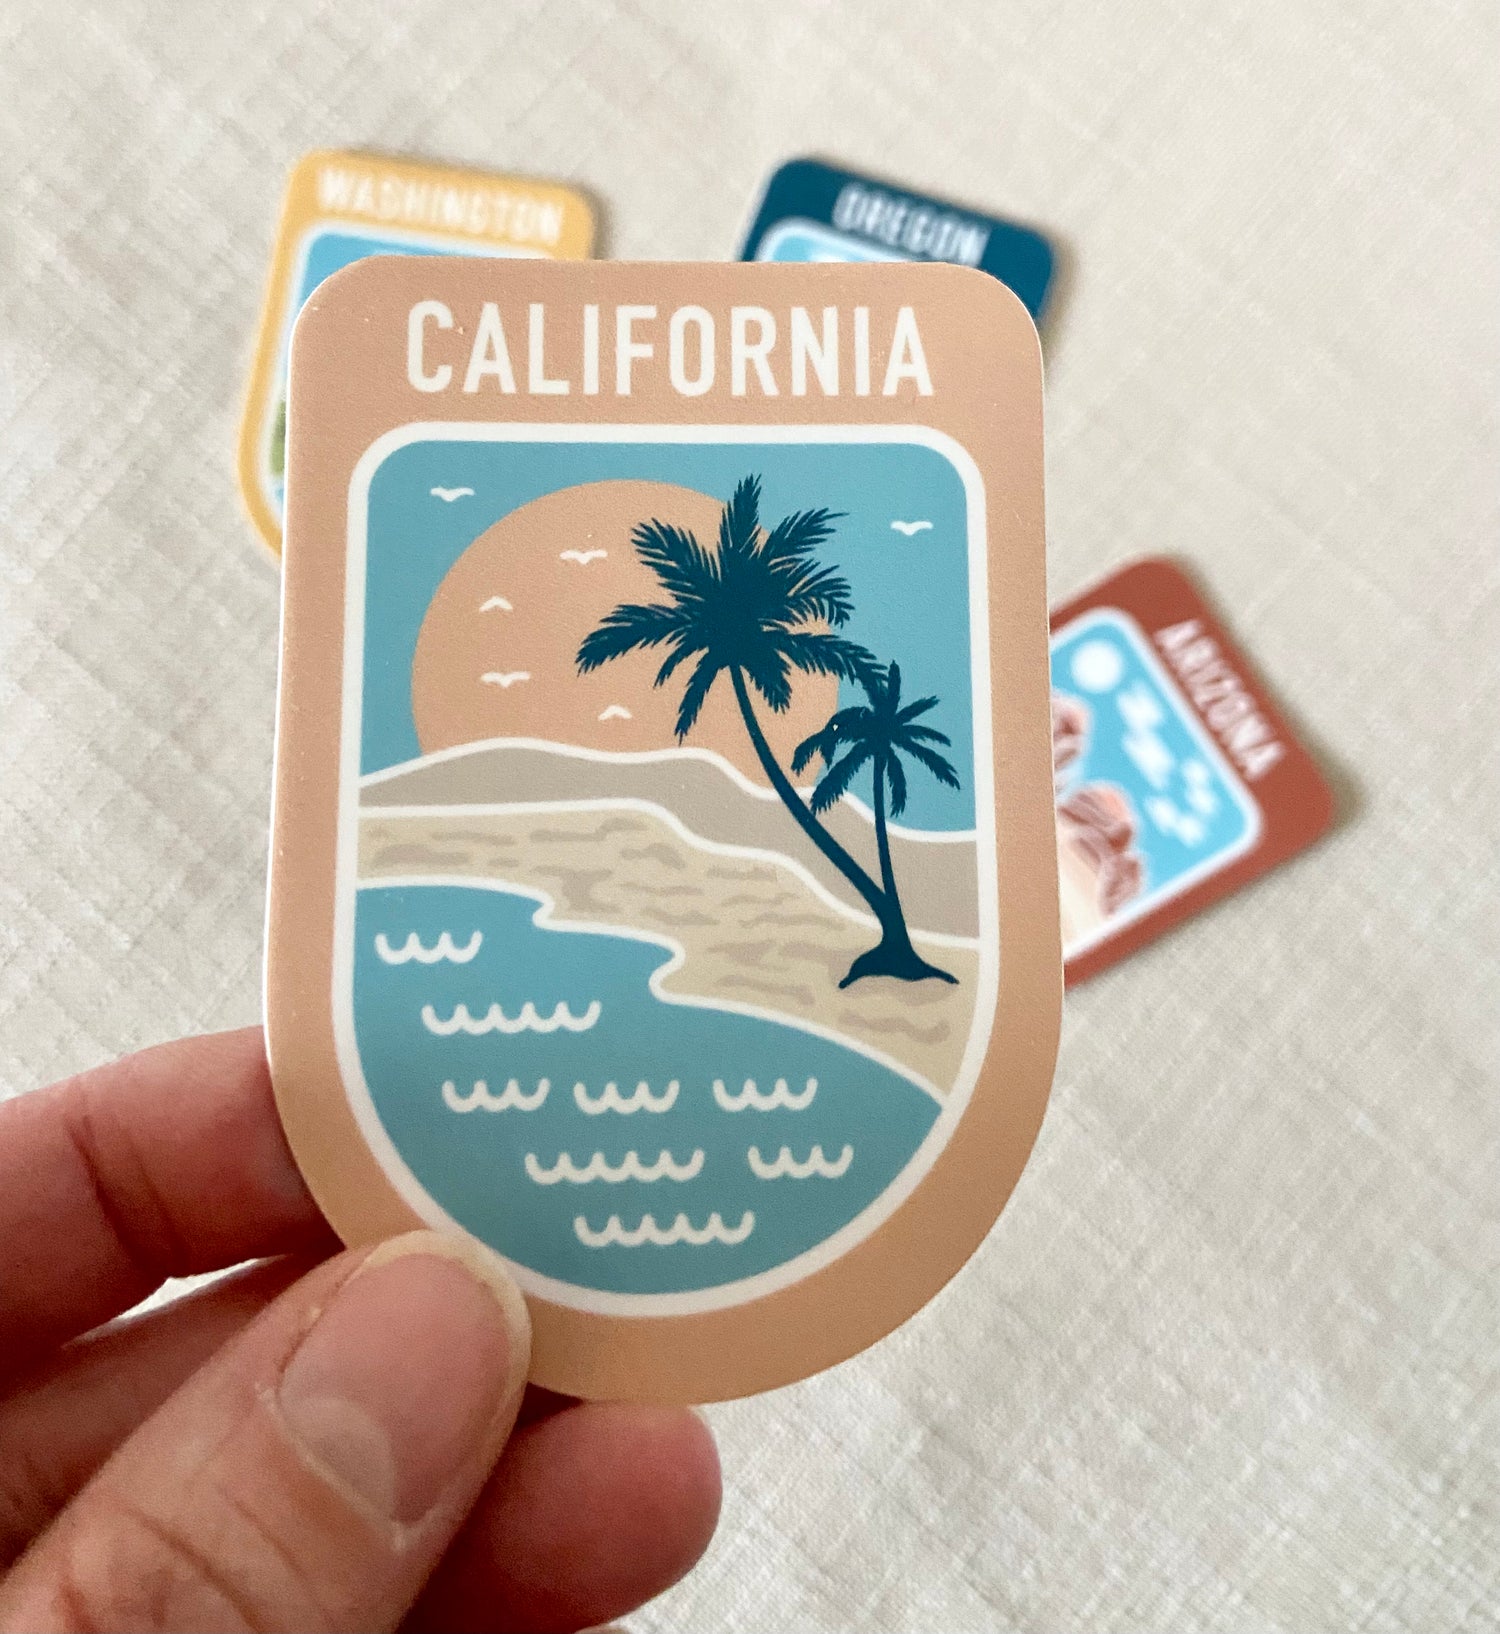 State Scenic Route California - Vinyl Sticker